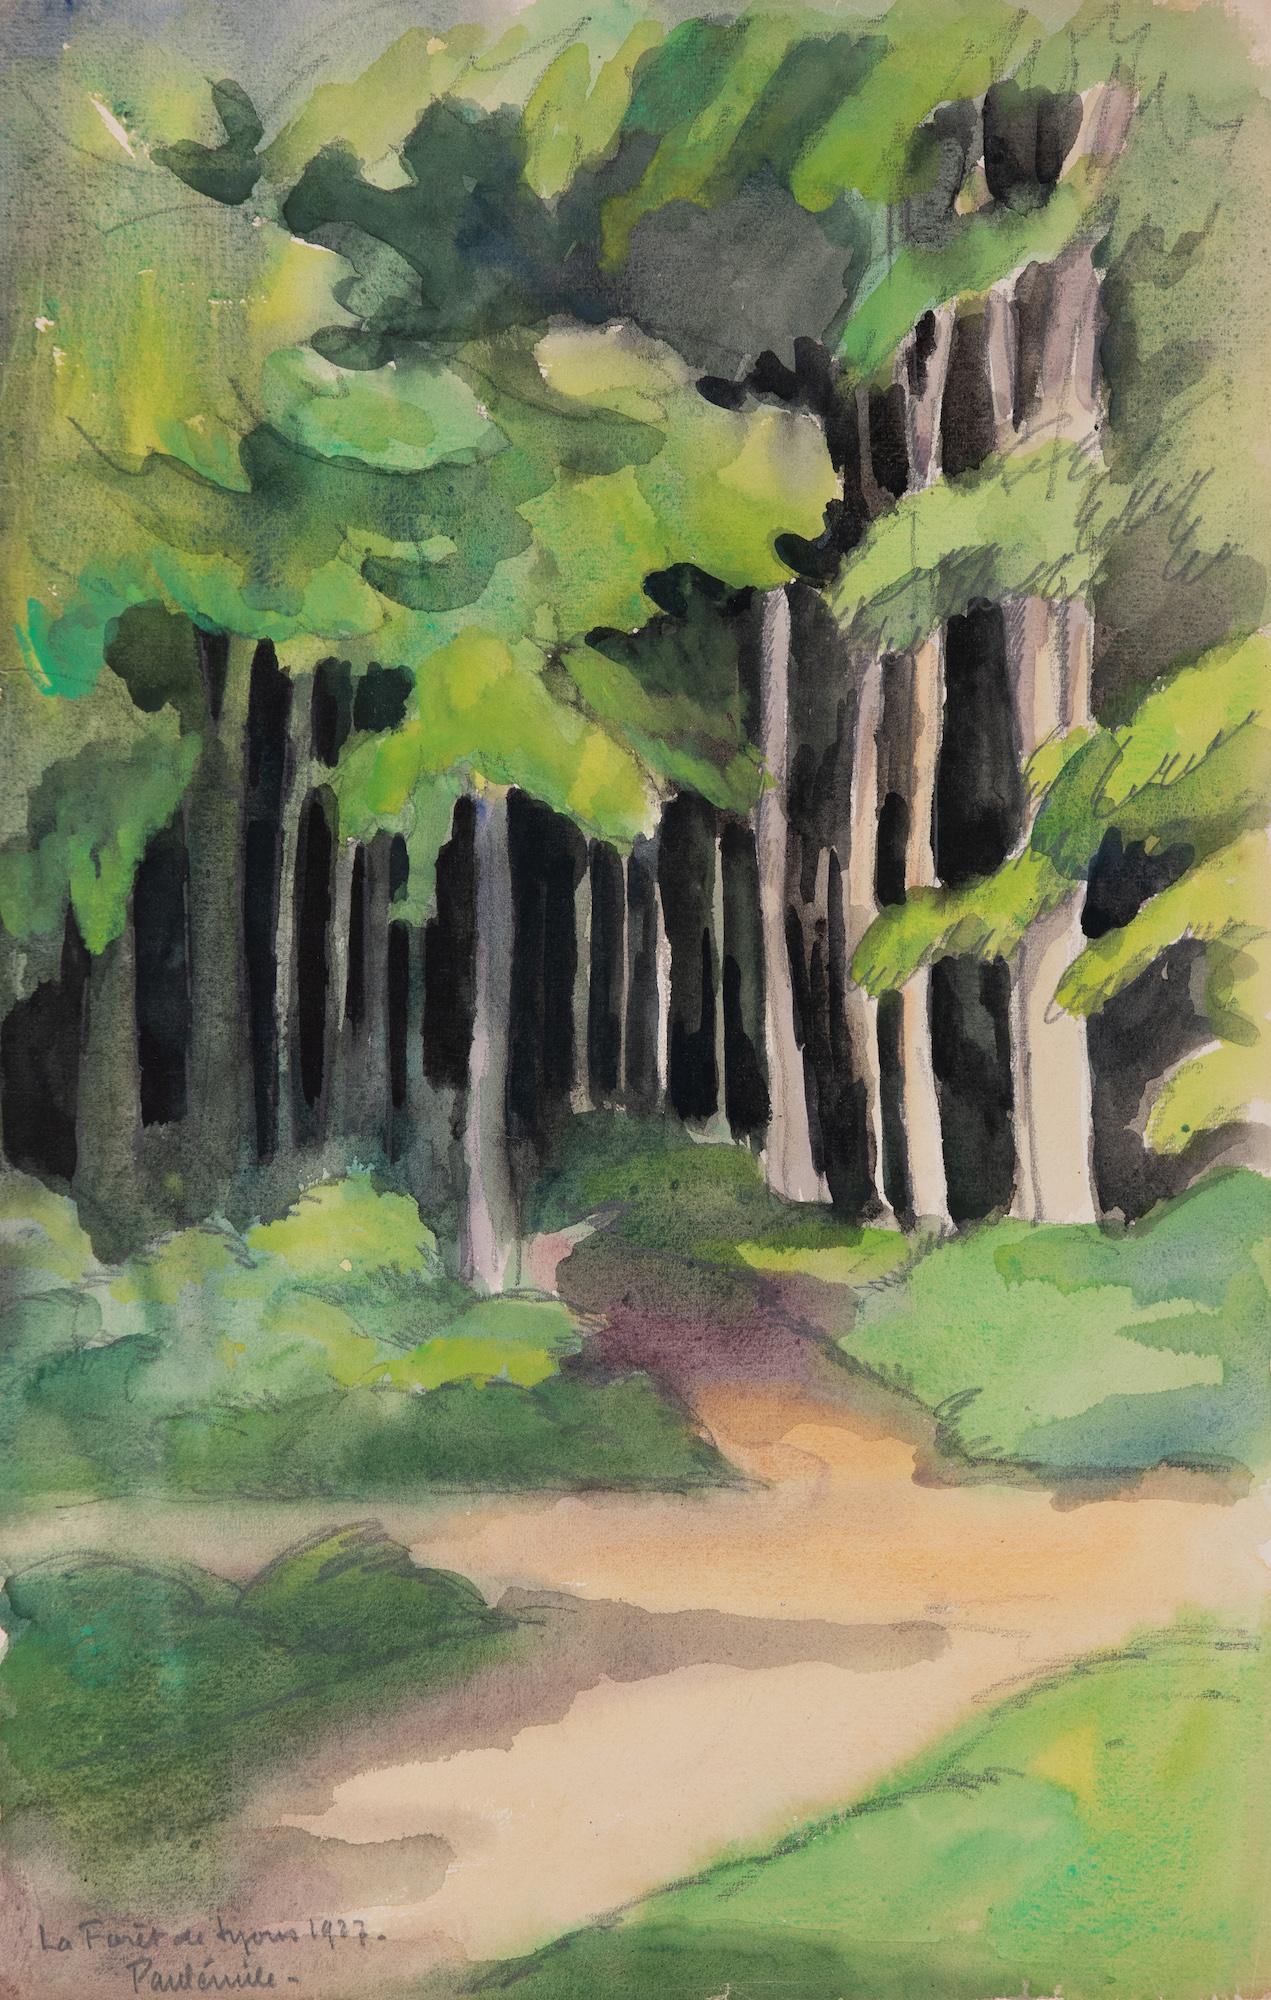 La Forêt de Lyons by Paulémile Pissarro - Watercolour landscape